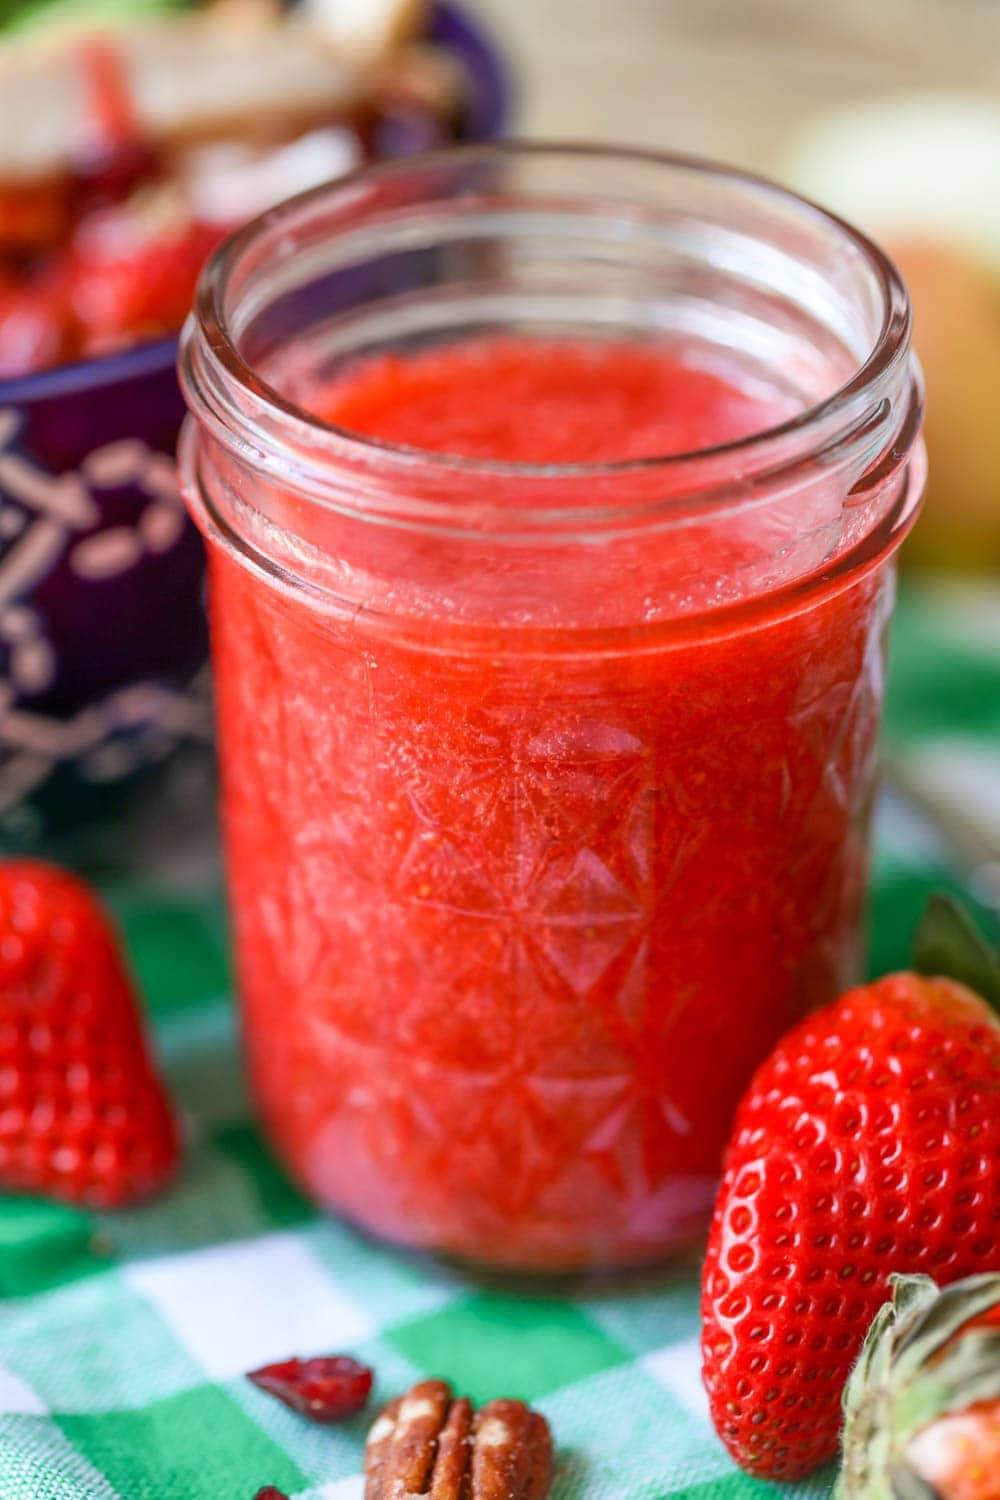 玻璃罐中草莓油醋酱的特写镜头